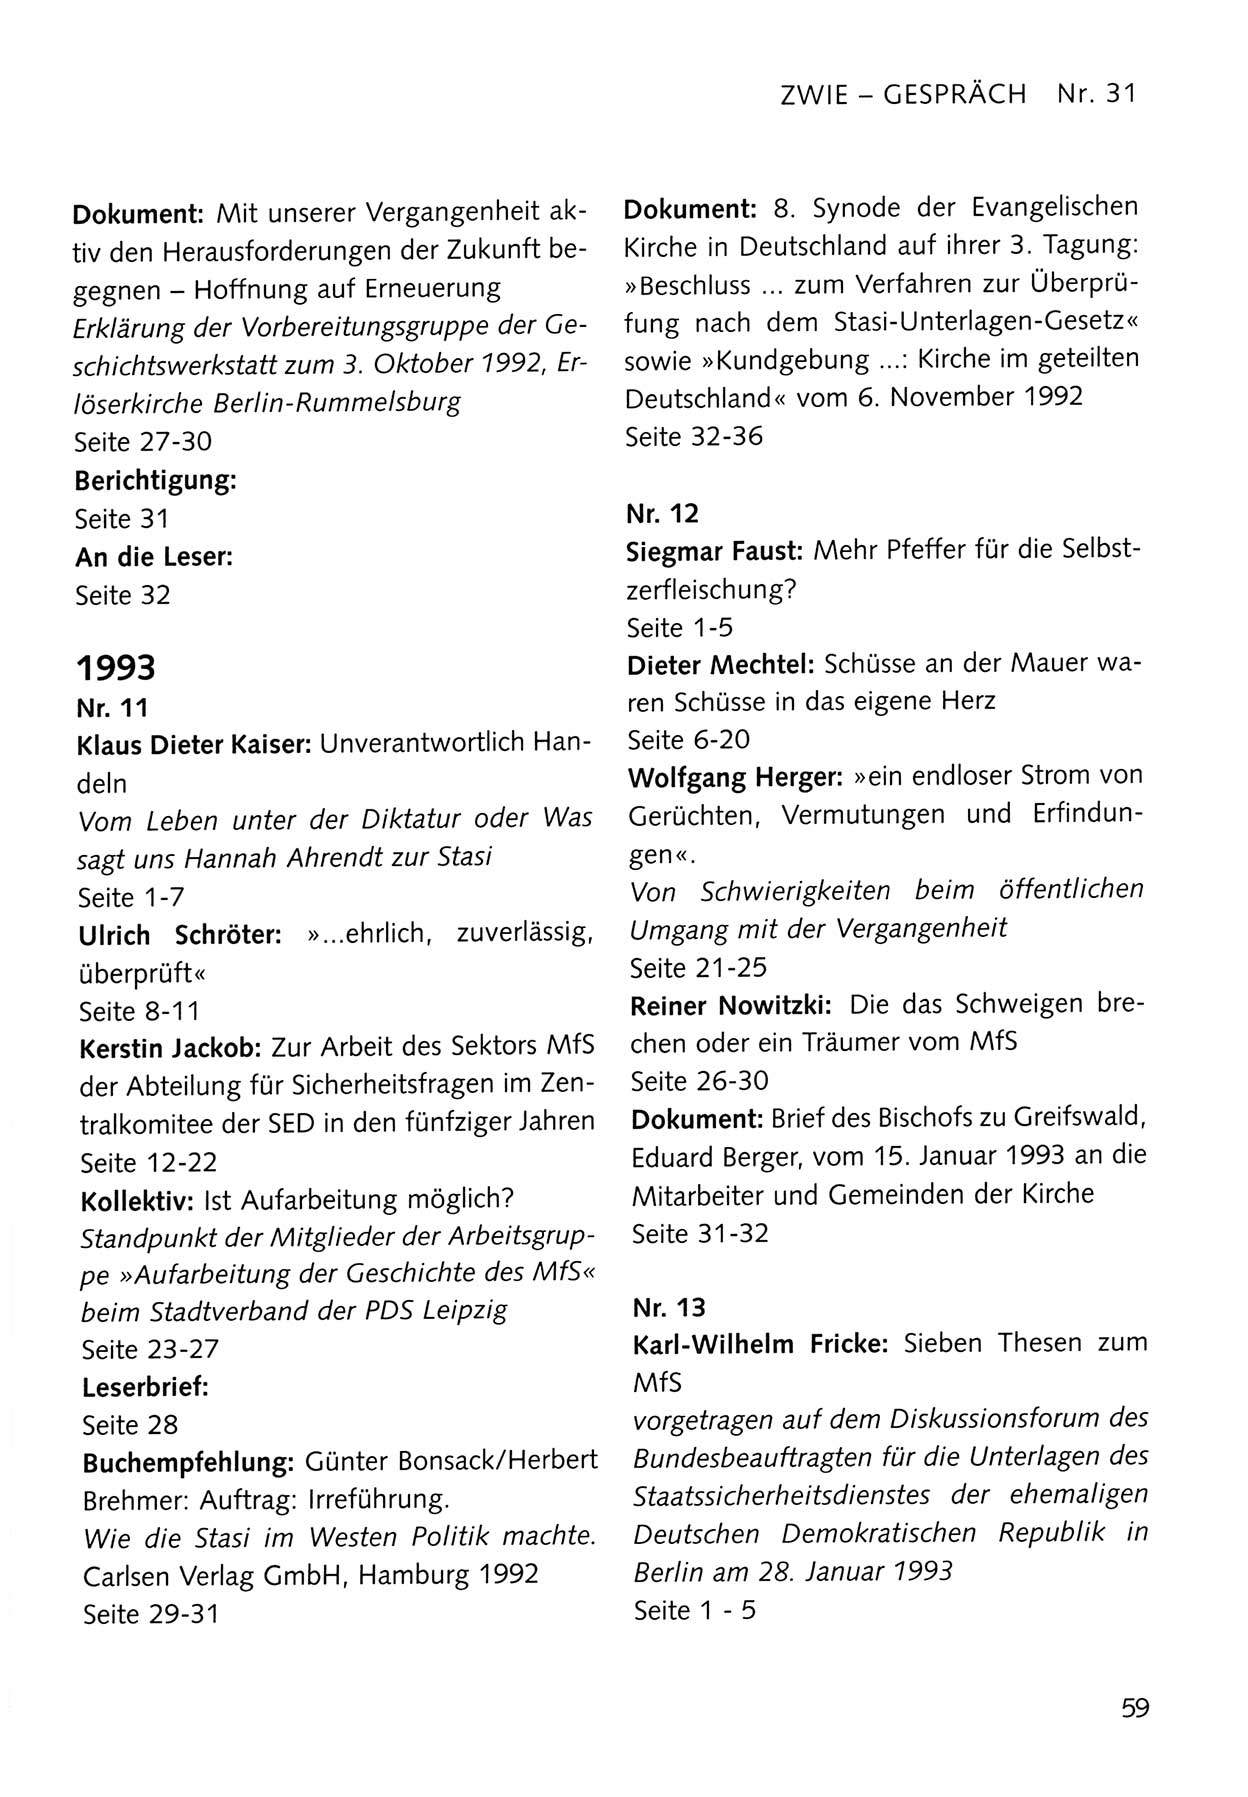 Zwie-Gespräch, Beiträge zum Umgang mit der Staatssicherheits-Vergangenheit [Deutsche Demokratische Republik (DDR)], Ausgabe Nr. 31, Berlin 1995, Seite 59 (Zwie-Gespr. Ausg. 31 1995, S. 59)